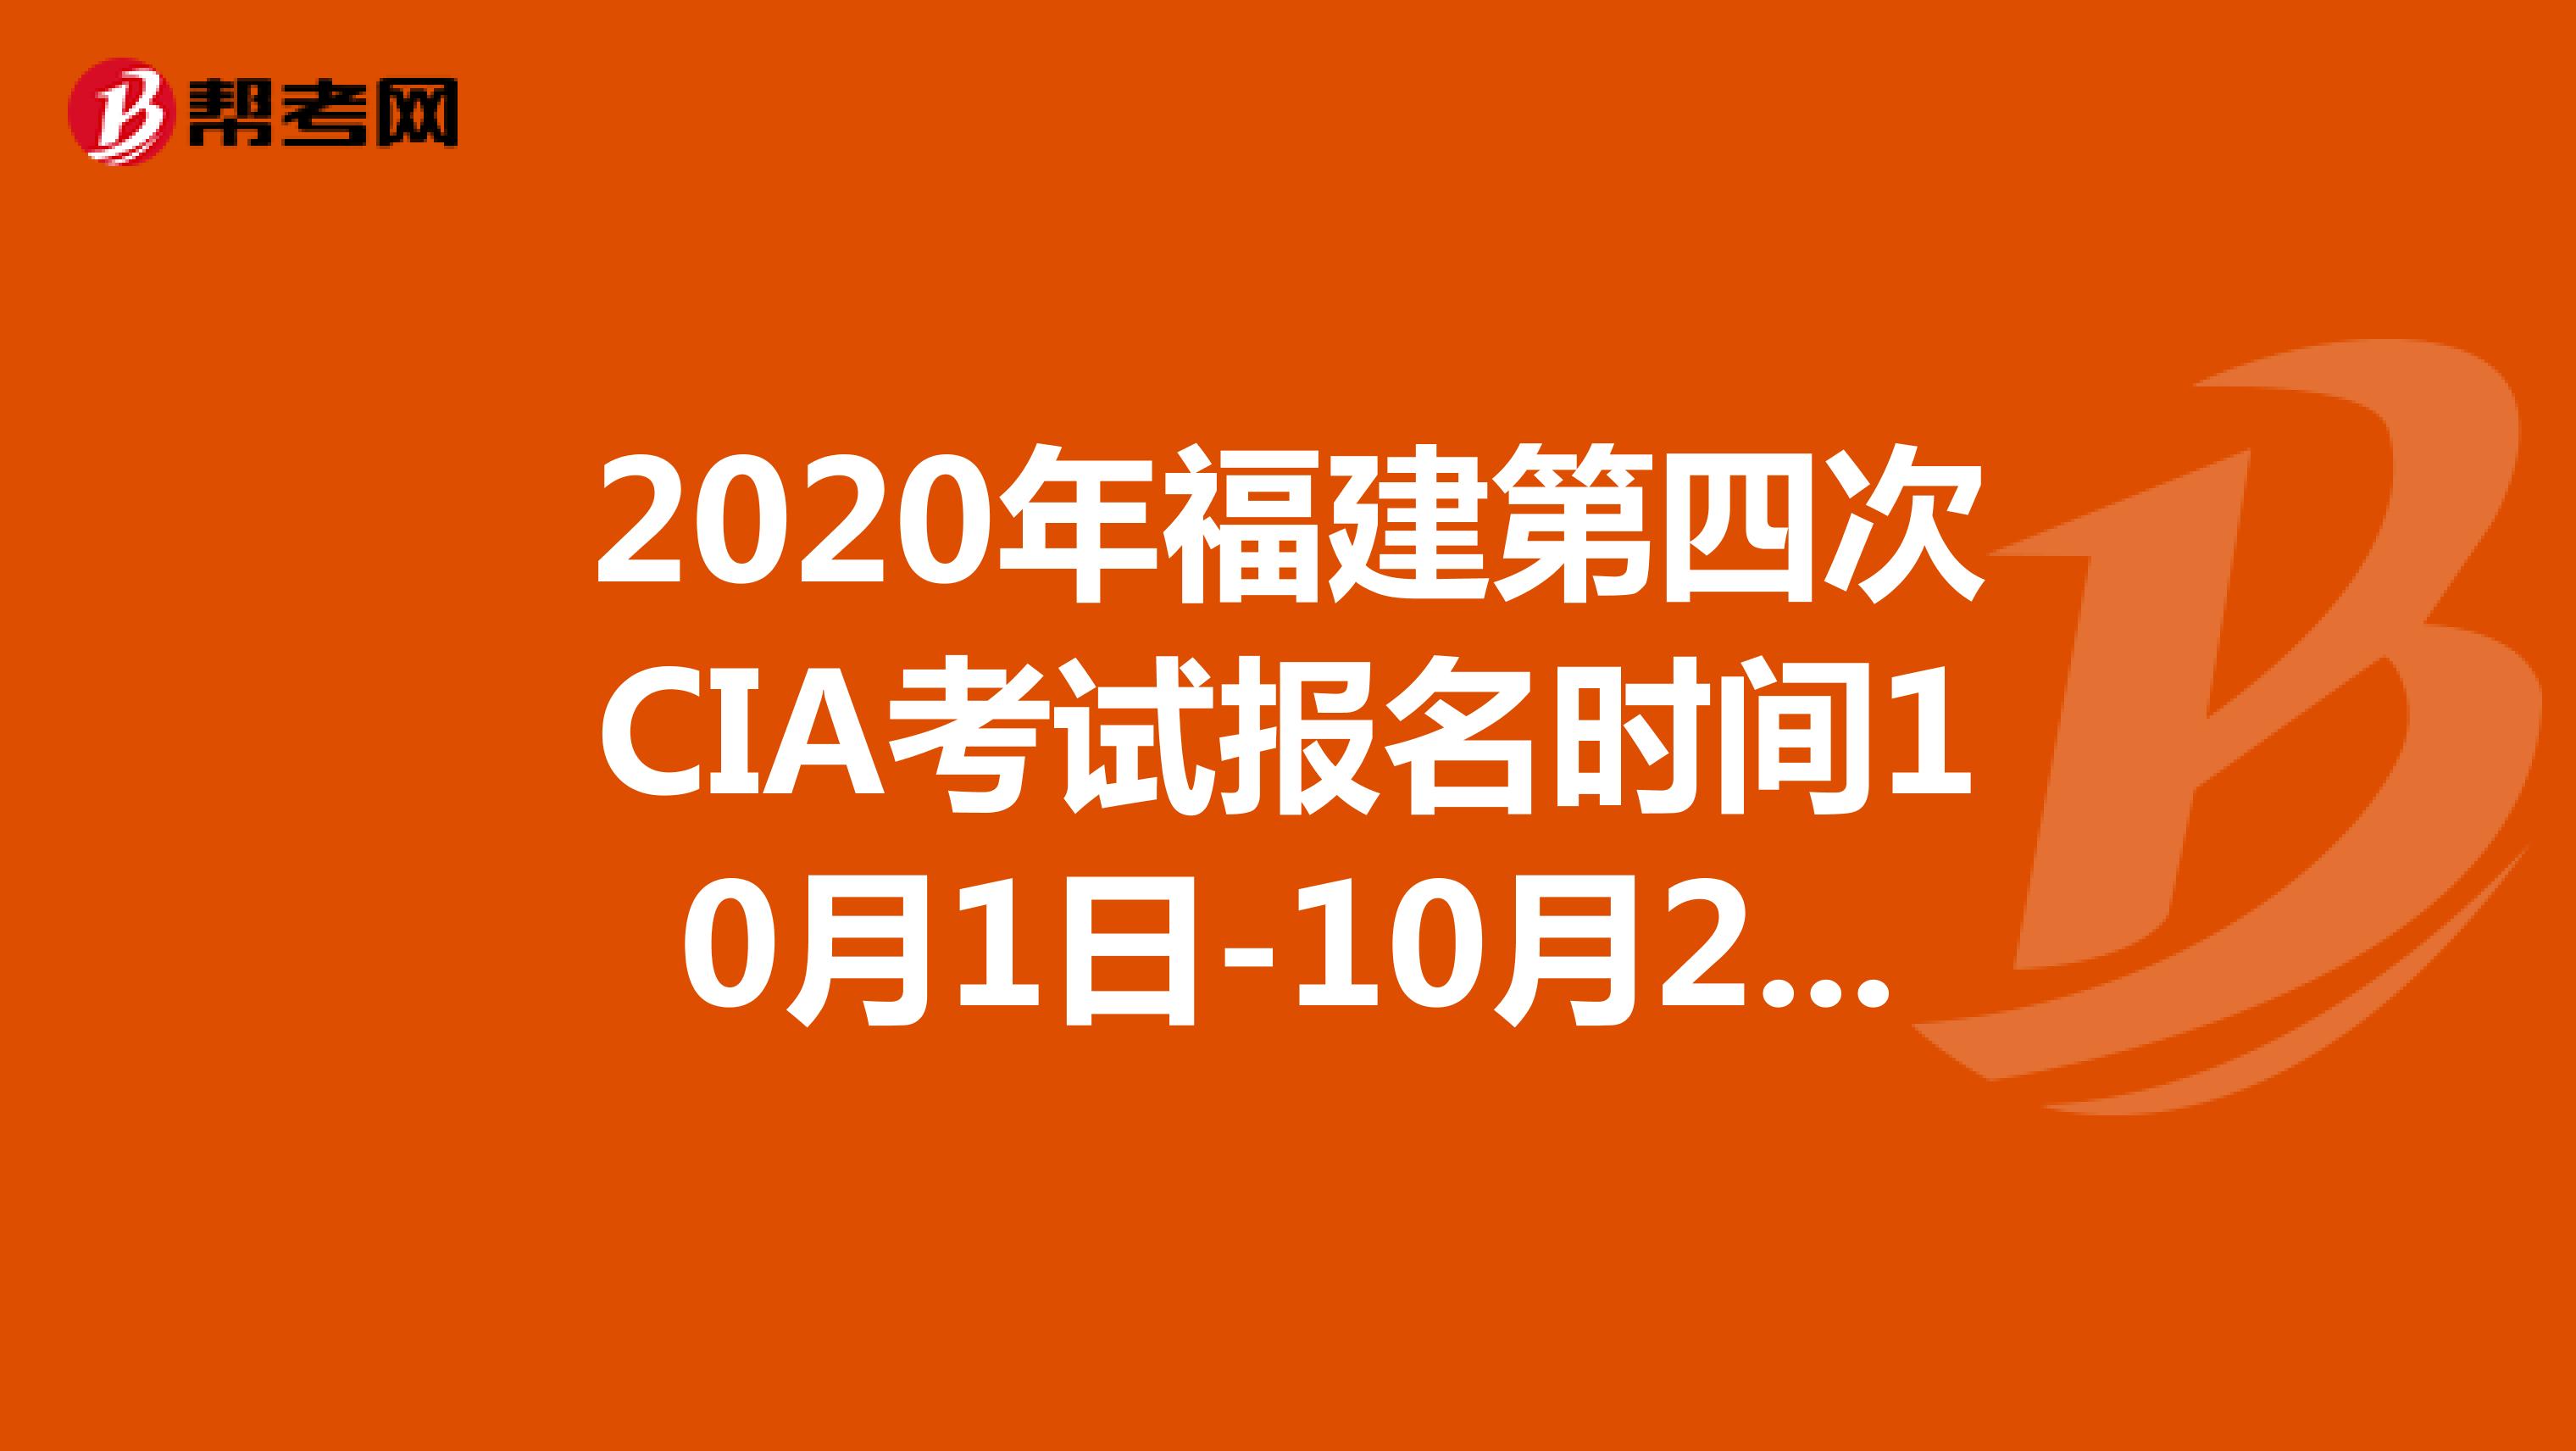 2020年福建第四次CIA考试报名时间10月1日-10月20日